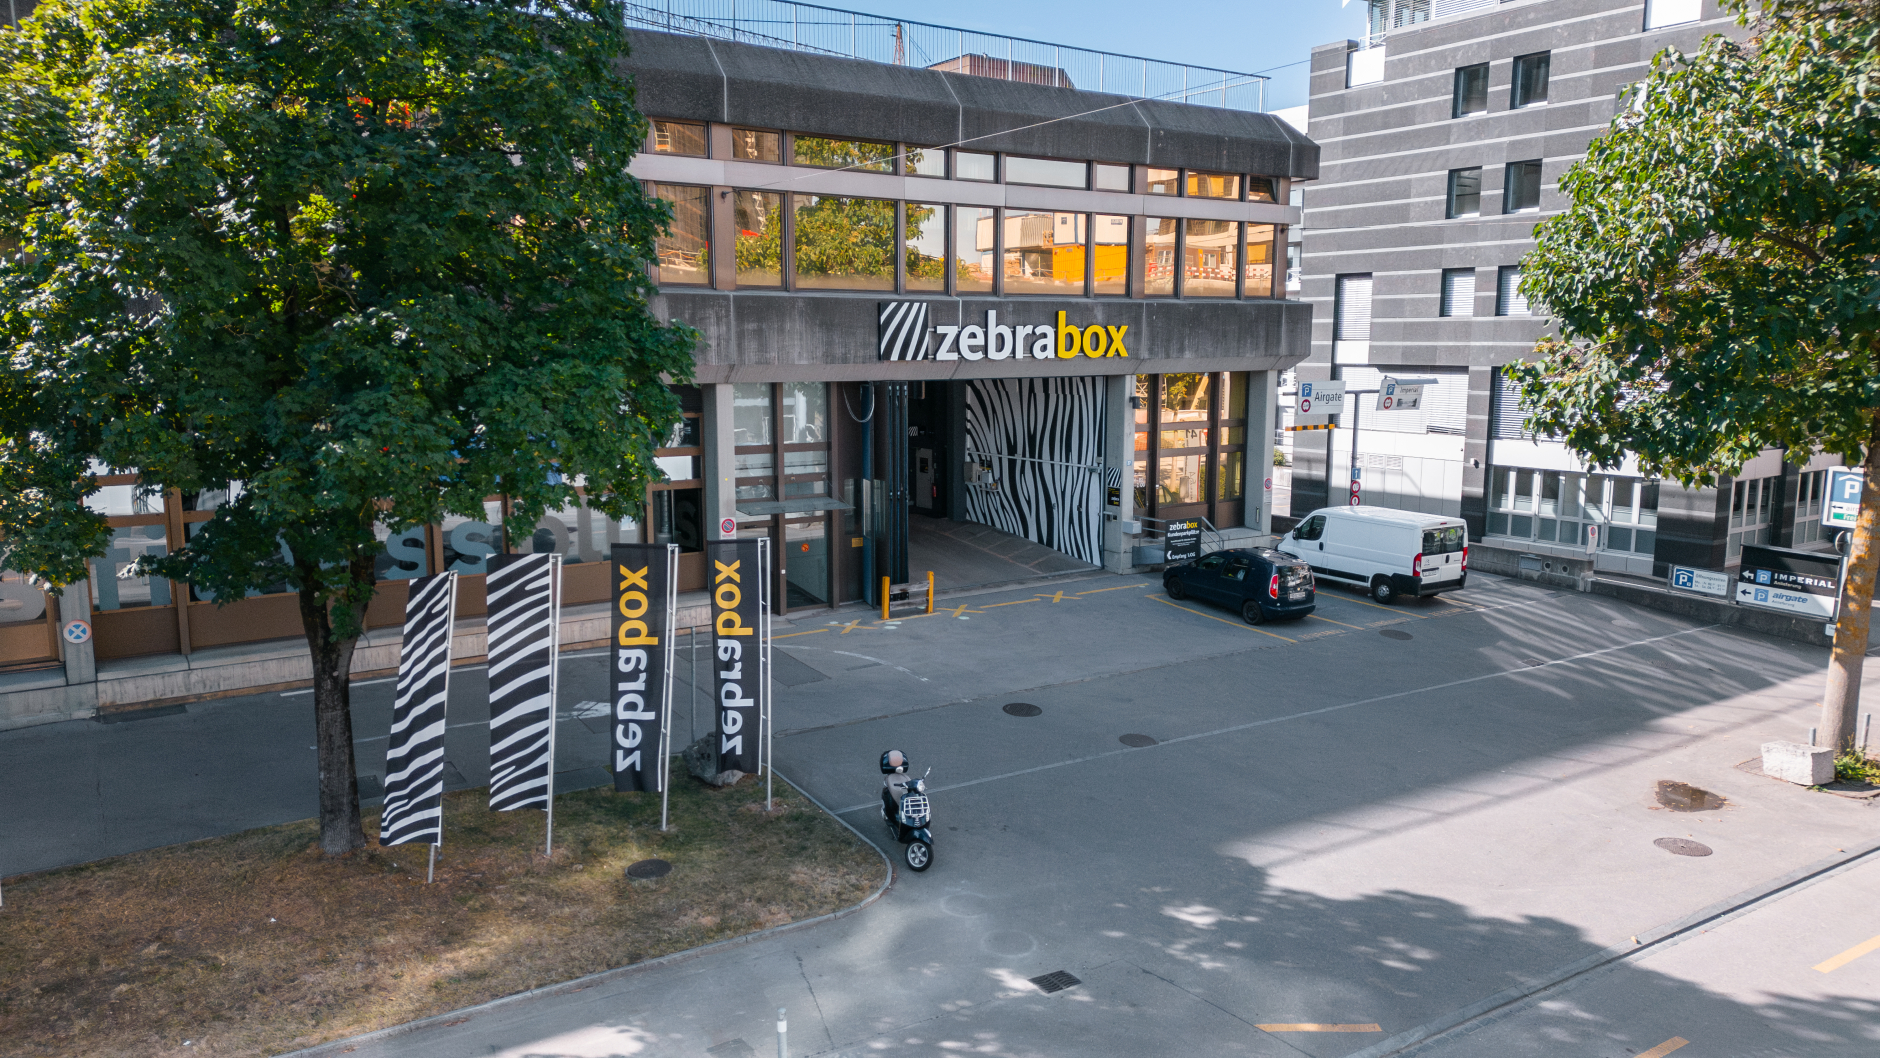 Heckbox mieten in Zürich Unterland bei CAMPTIVITY